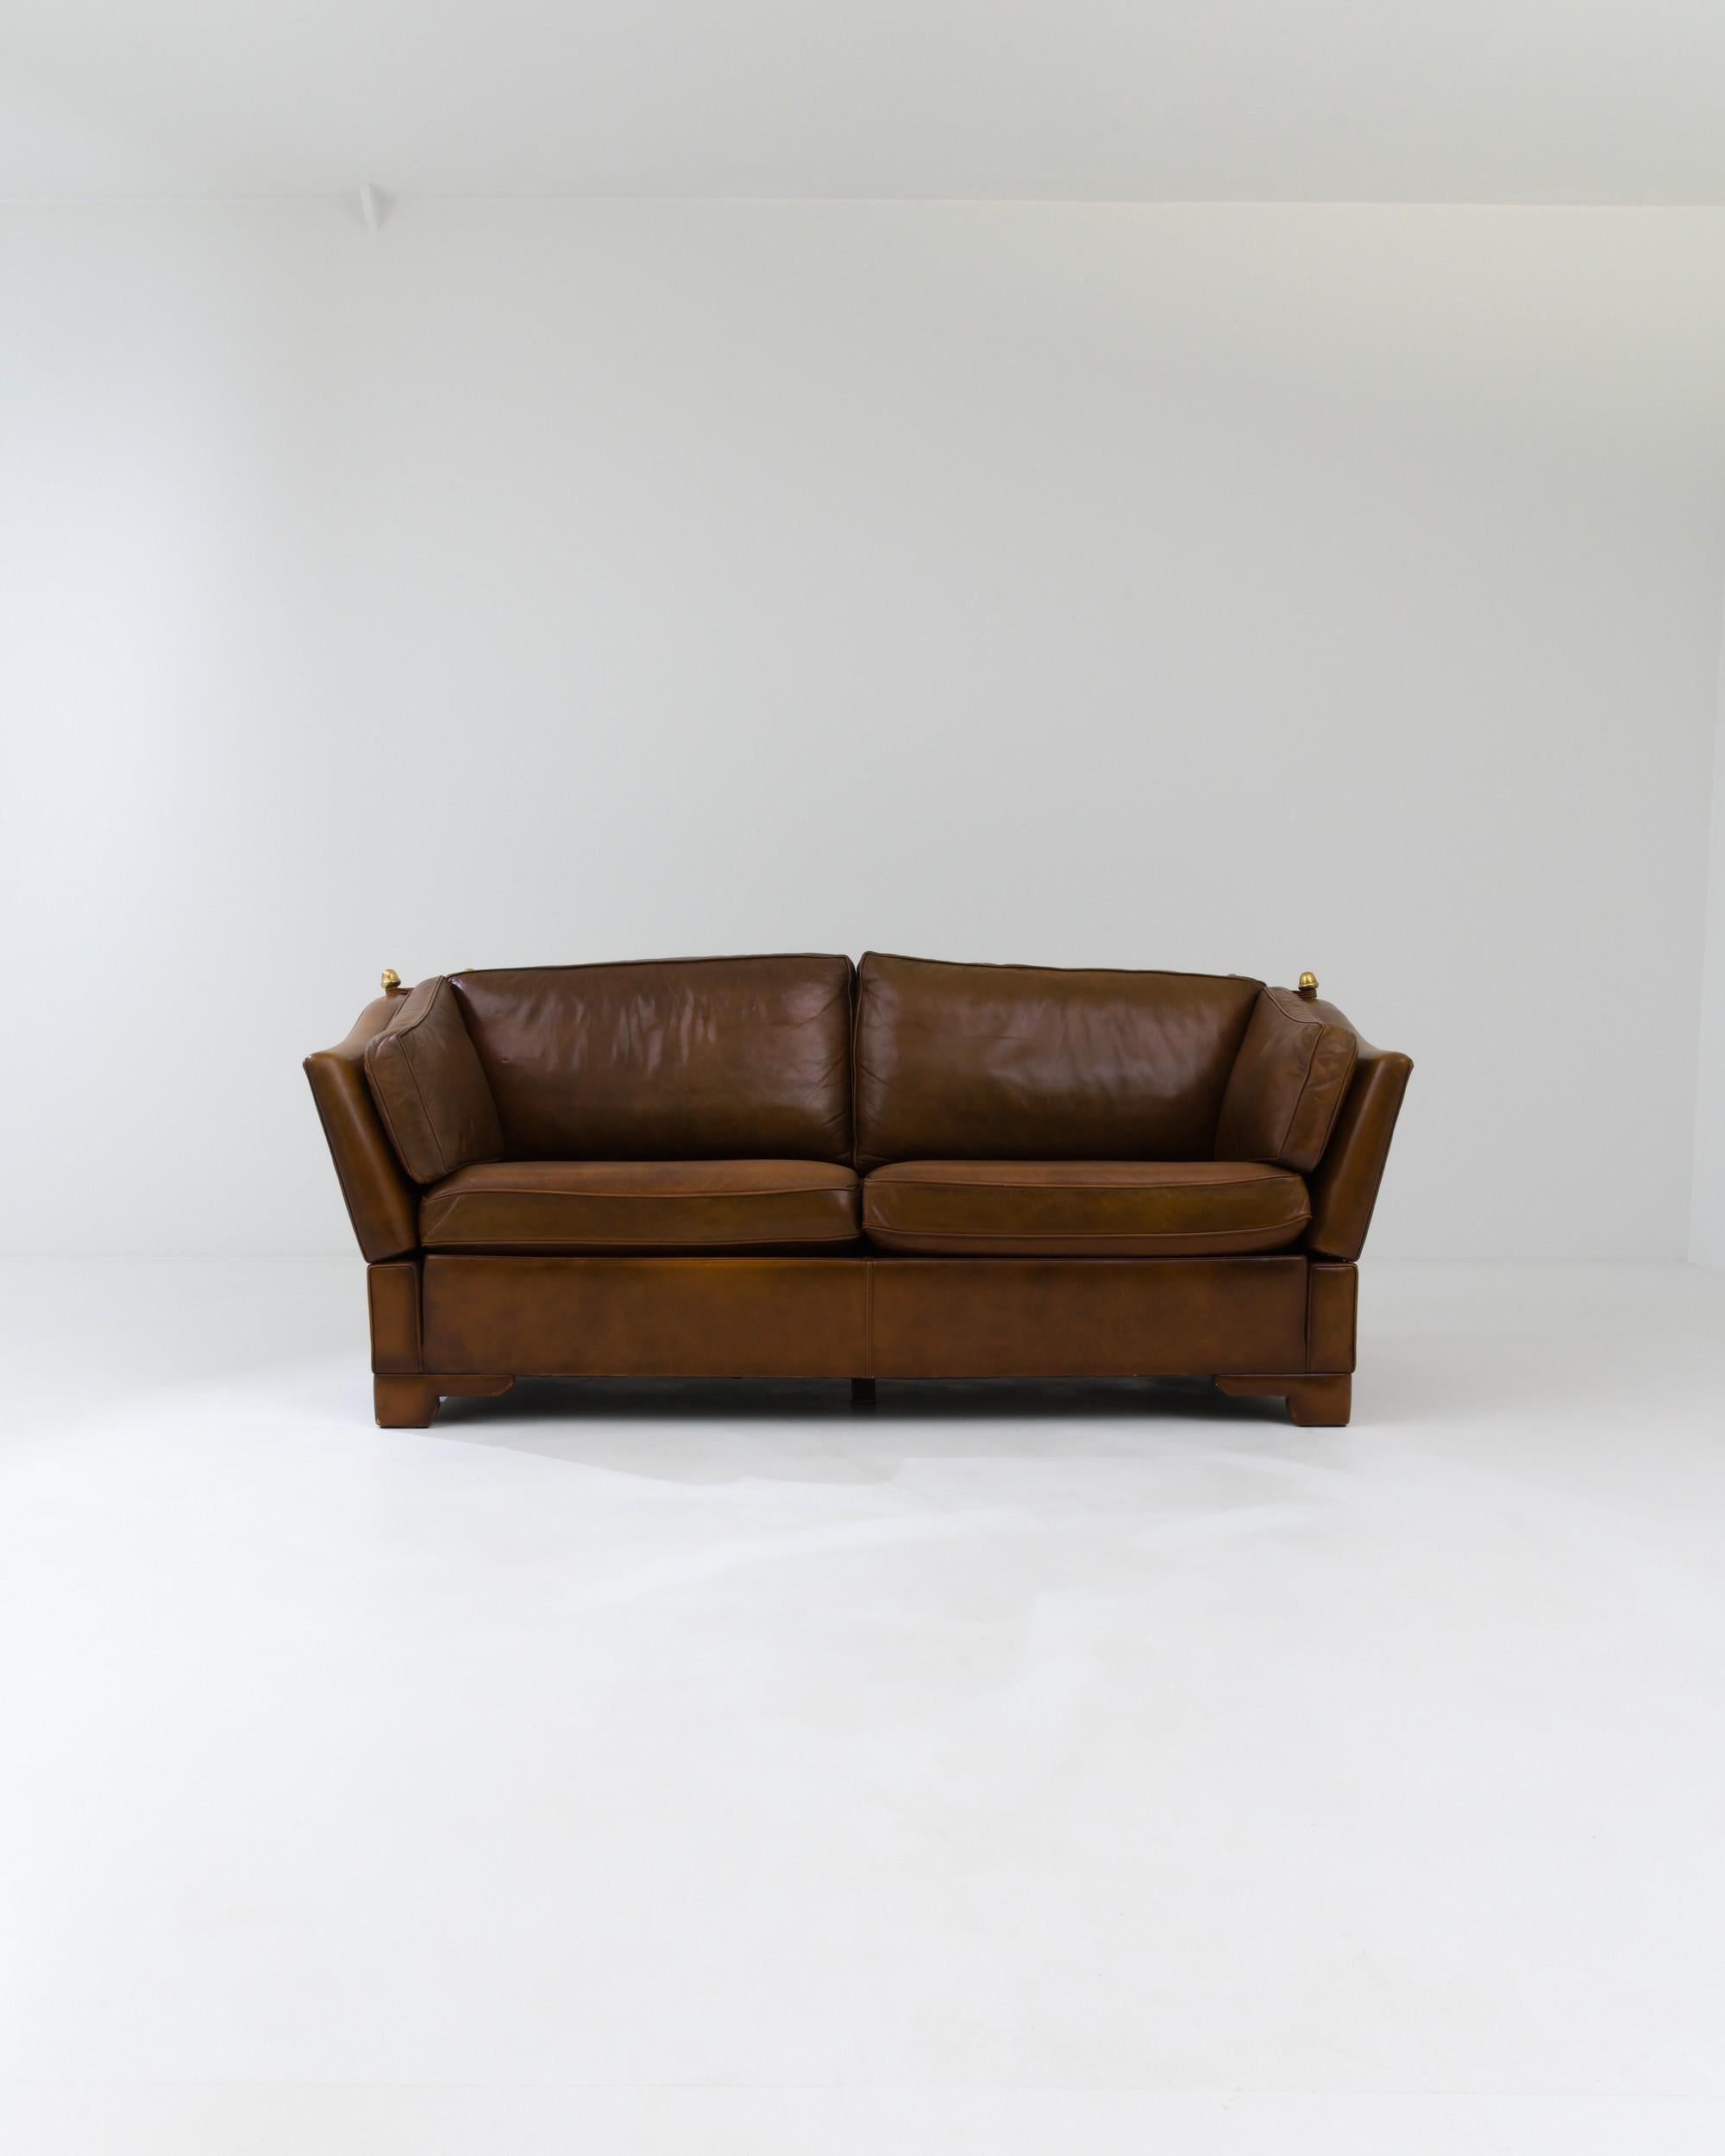 Dieses stilvolle Zweisitzer-Sofa aus Leder wurde um 1970 in Großbritannien entworfen und zeichnet sich durch ein innovatives Design mit verstellbaren Seiten aus, die mit Hilfe von Schnüren, die an den Messingankern befestigt sind, festgezogen oder